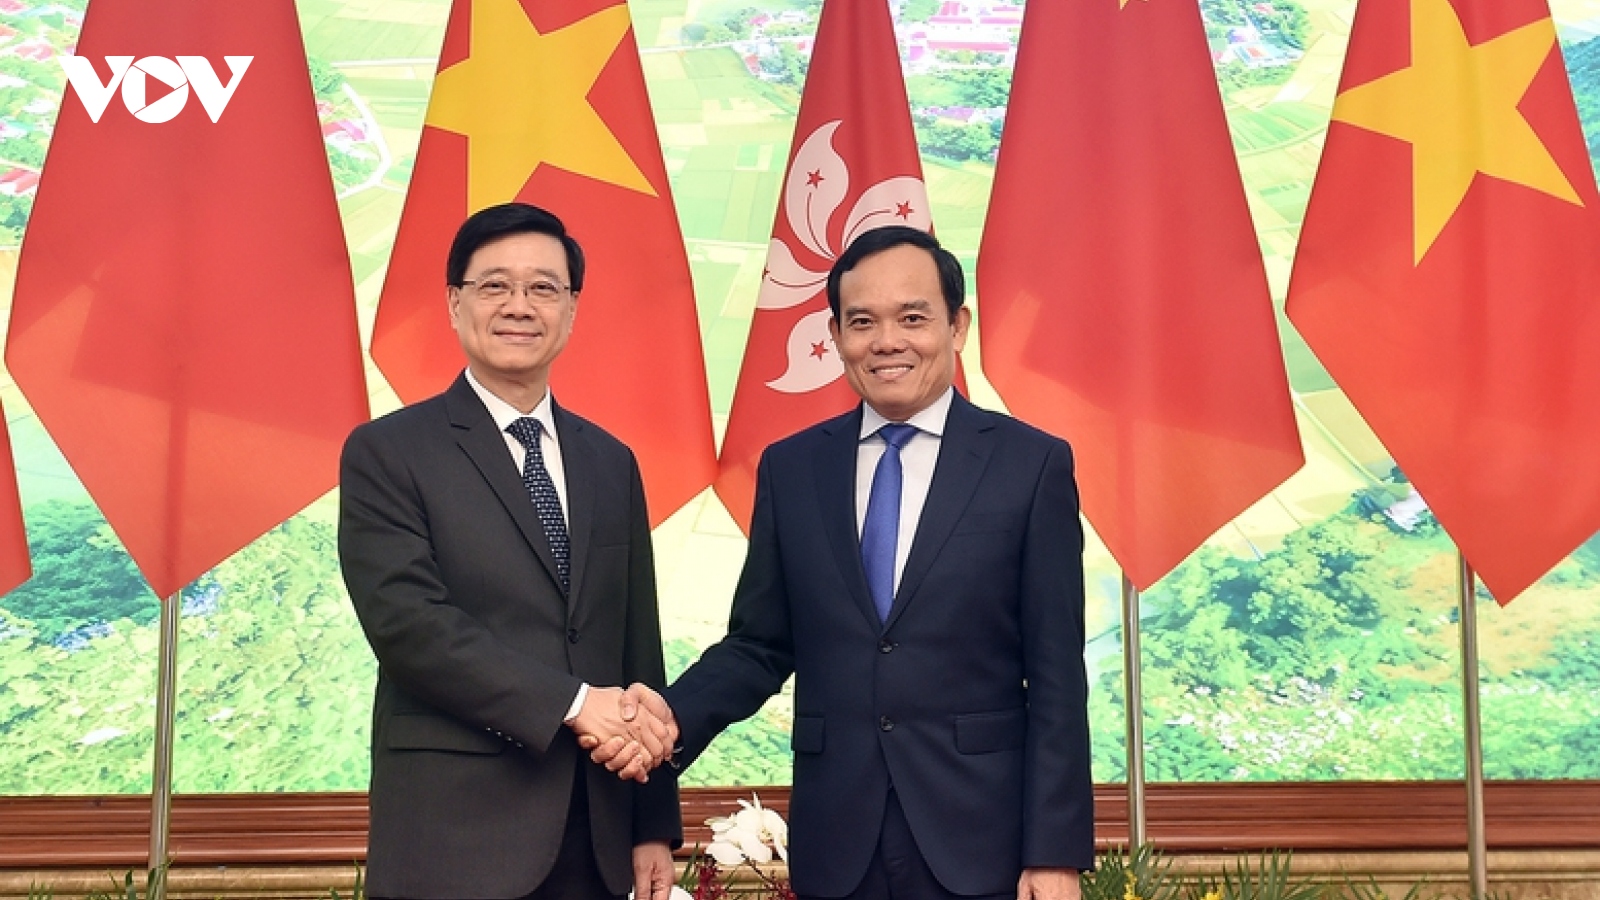 Nâng cao hiệu quả hợp tác giữa Việt Nam và Hong Kong (Trung Quốc)